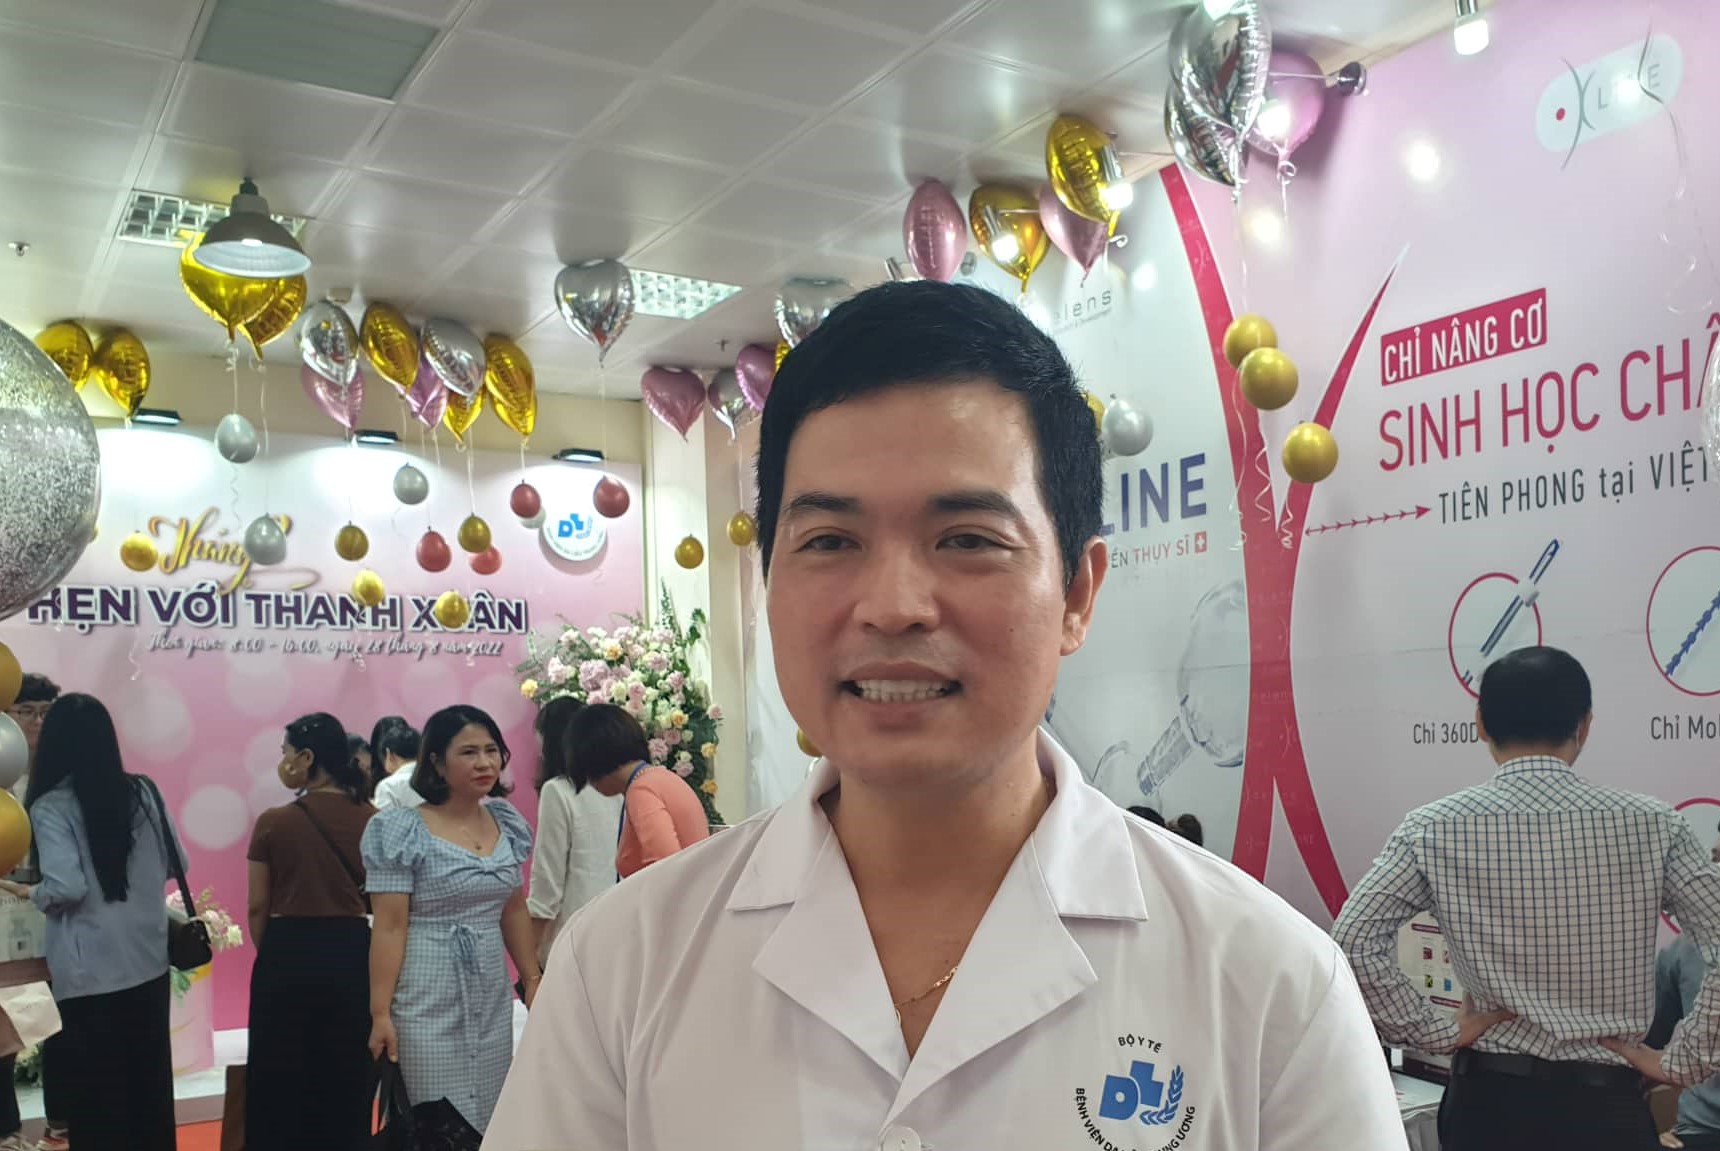 Bác sĩ Nguyễn Hồng Sơn cảnh báo nhiều trường hợp biến chứng vì làm đẹp vùng kín tại Spa